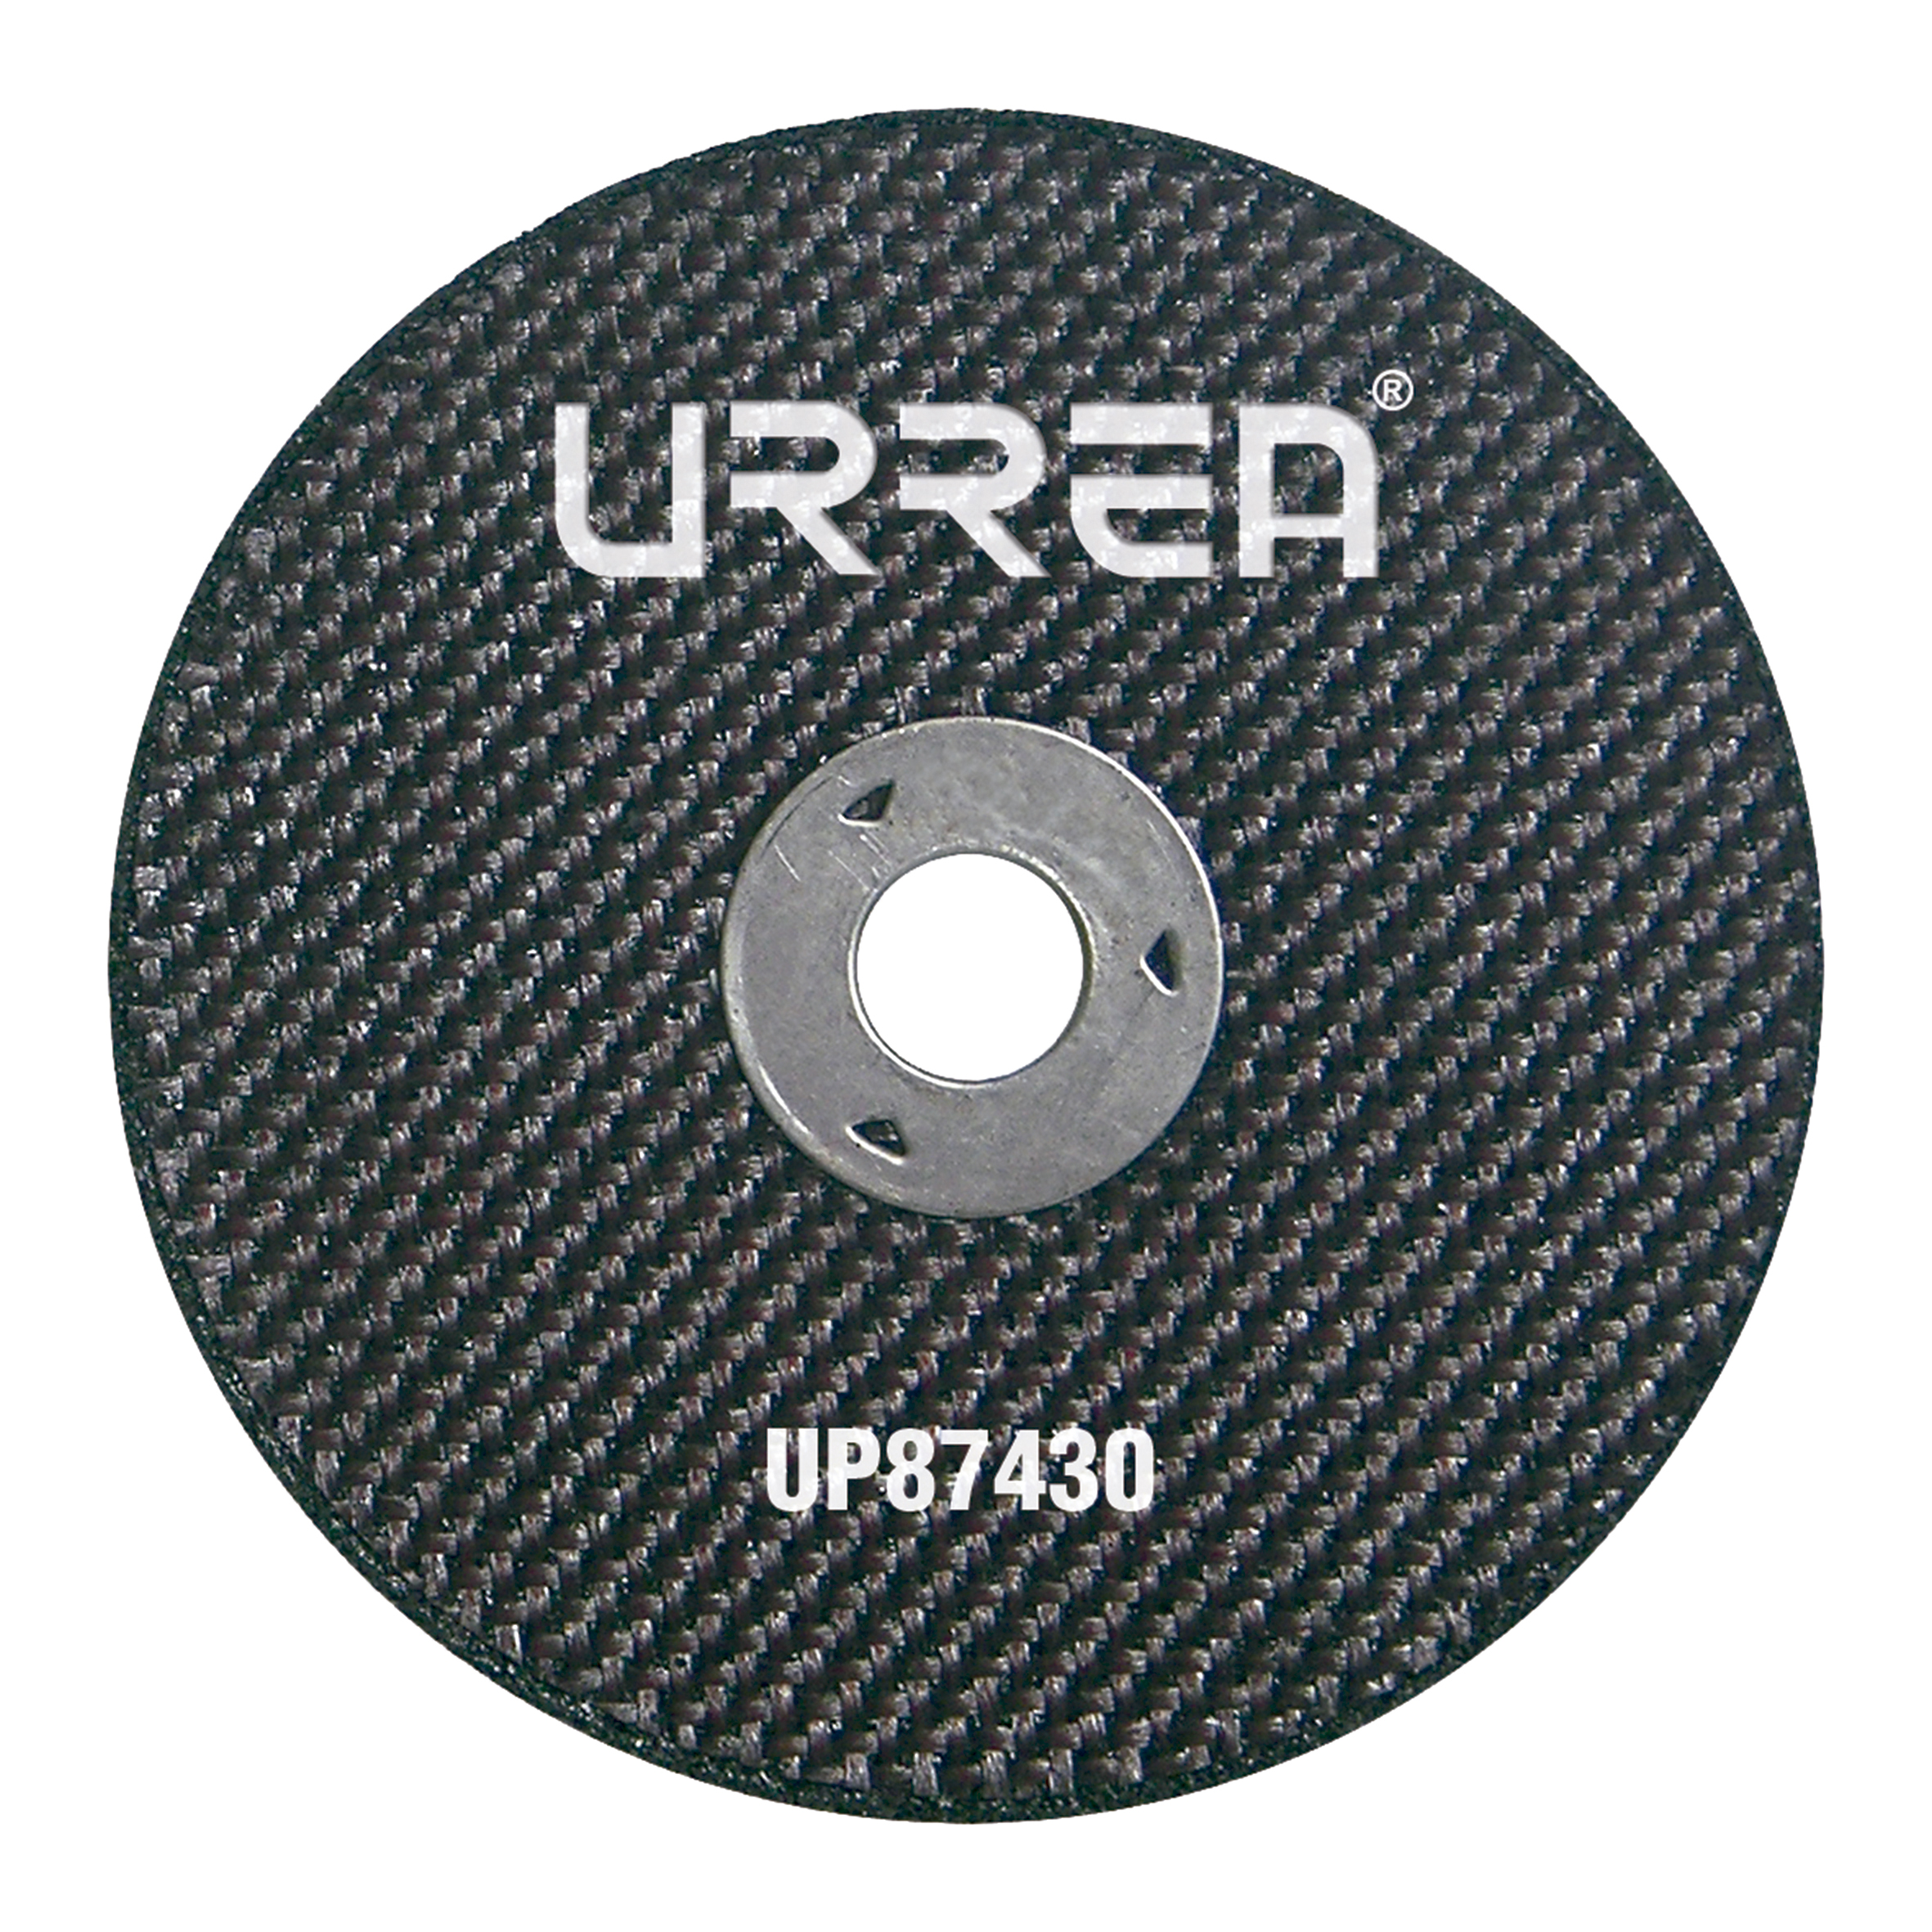 Disco para UP874 3" x 3/8" x 1/16" - Ferrecompras 